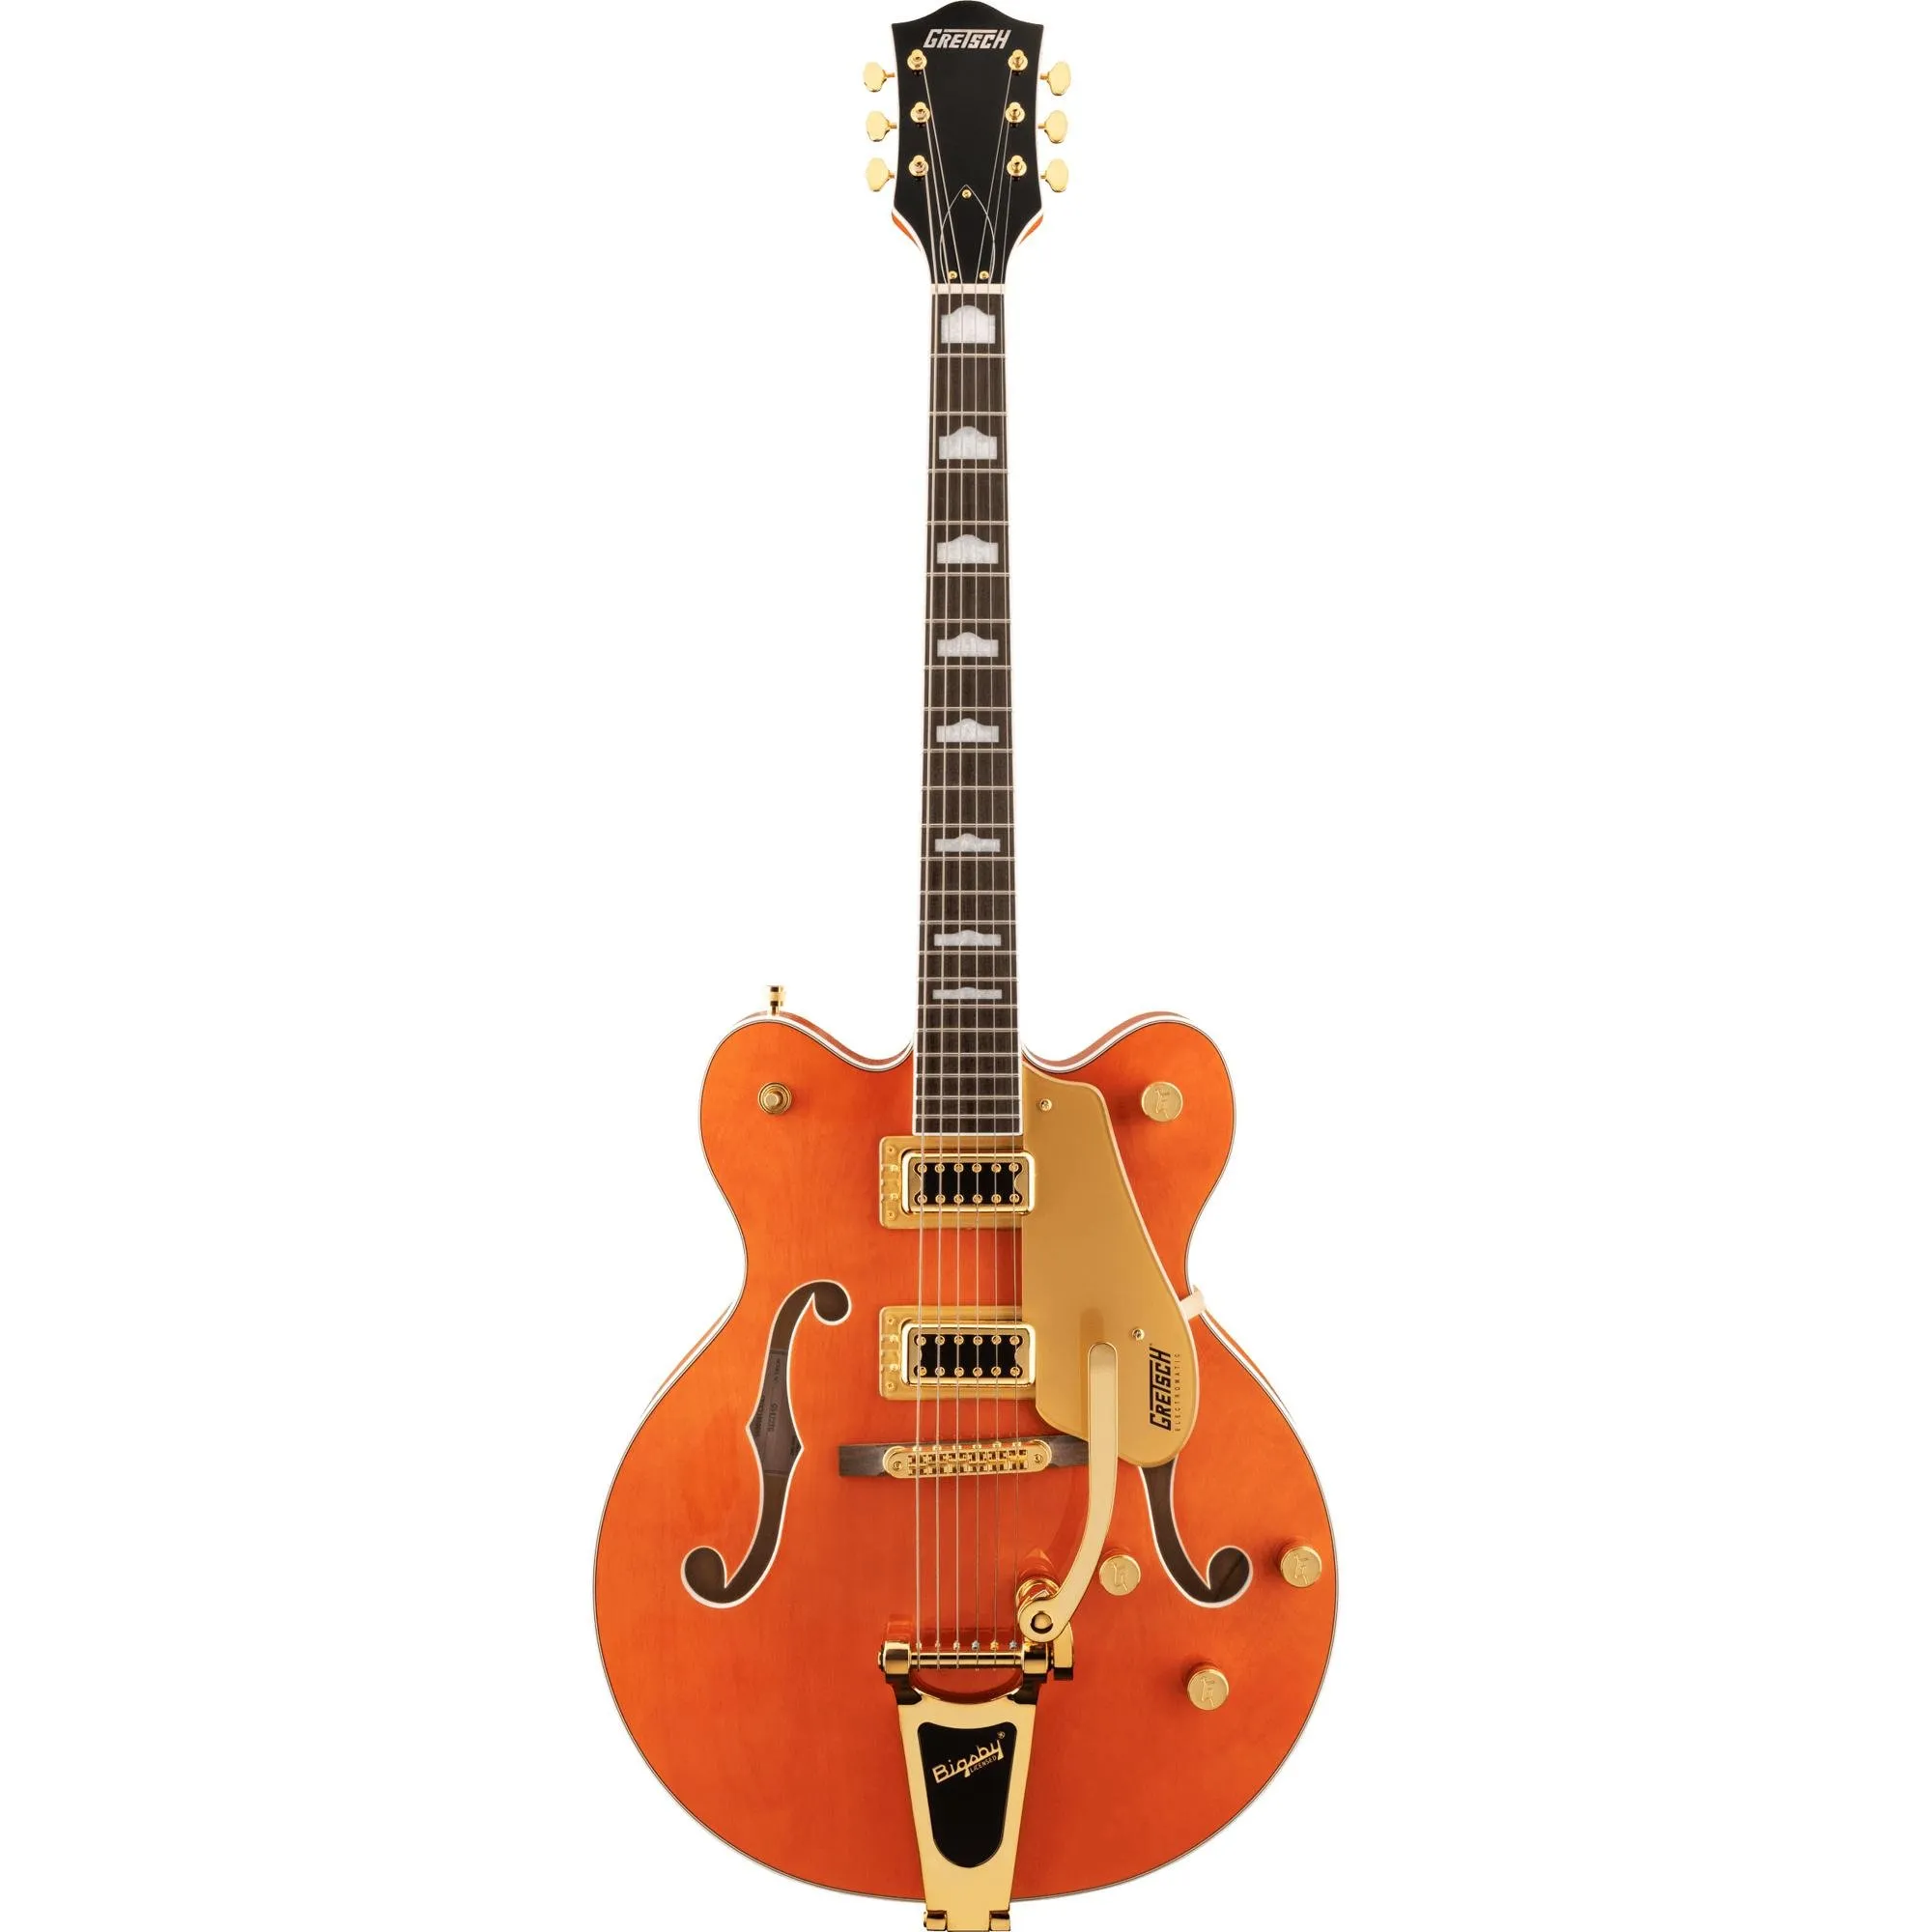 Guitarra Gretsch Eletromatic G5422TG Hollow Body Orange Stain por 8.499,99 à vista no boleto/pix ou parcele em até 12x sem juros. Compre na loja Mundomax!